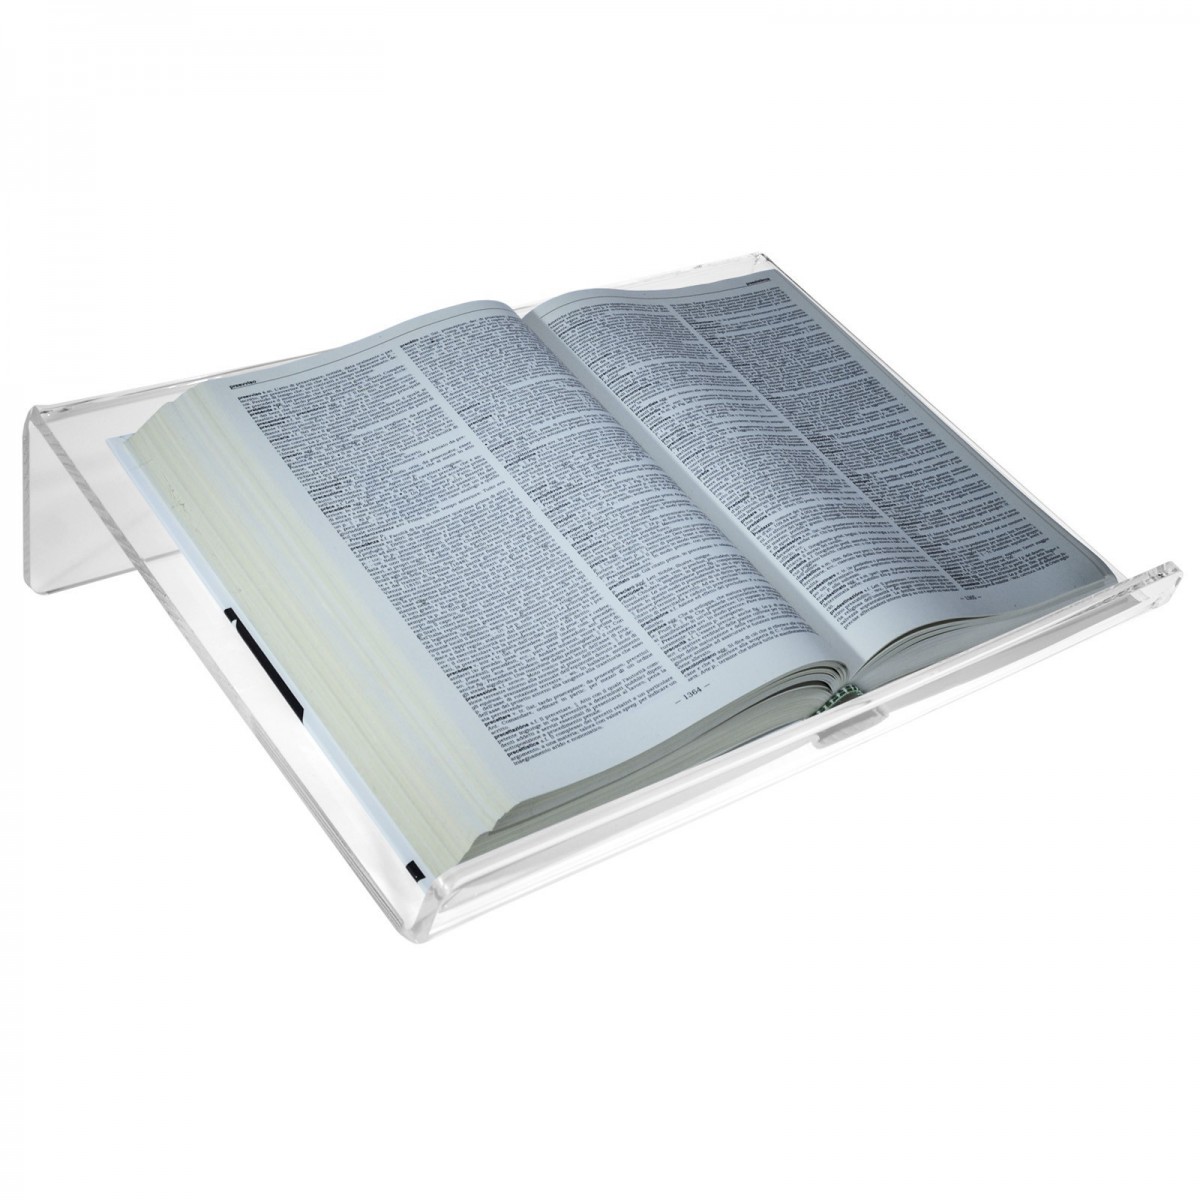 Leggio da tavolo in plexiglass trasparente con ripiano inclinato